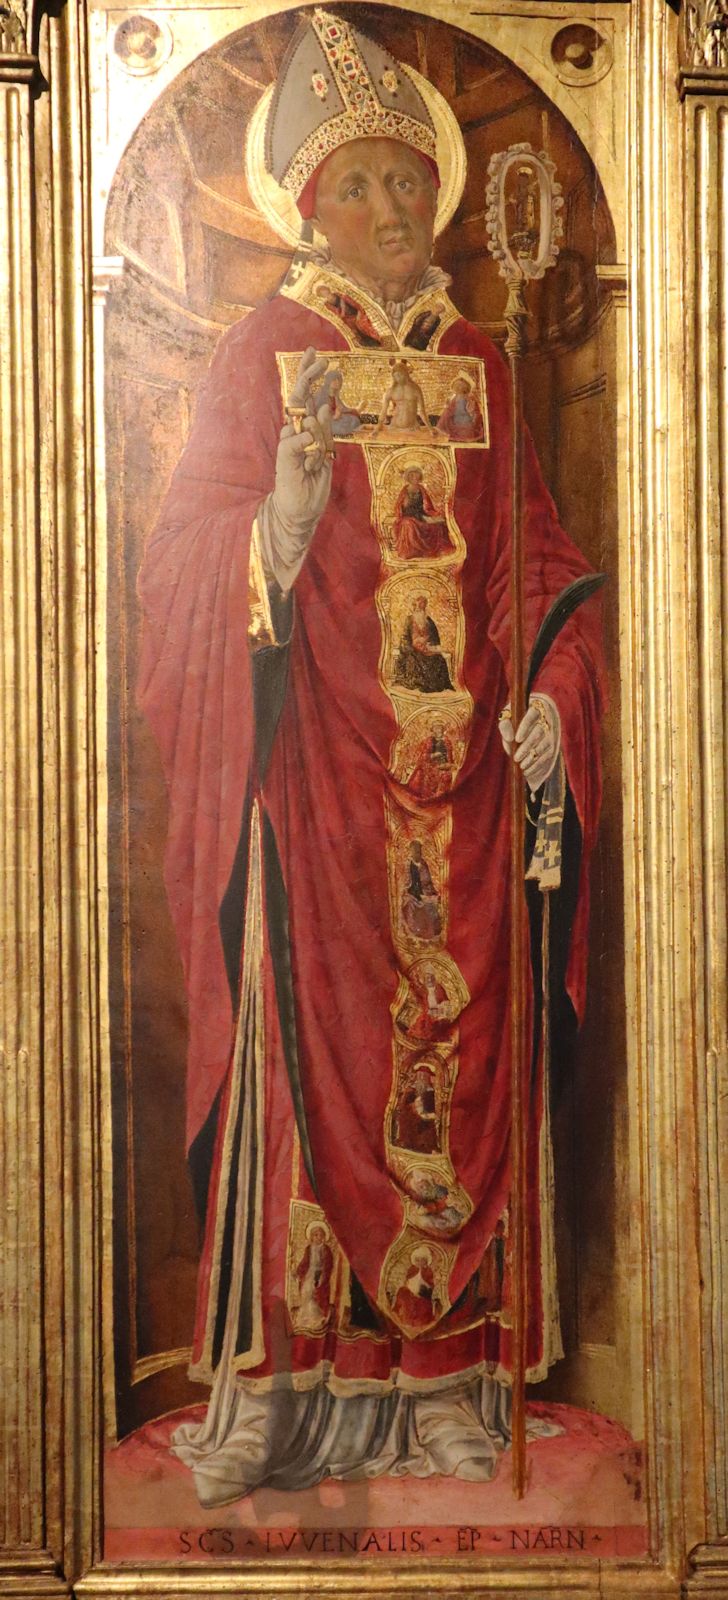 Ikone in der Kathedrale in Narni